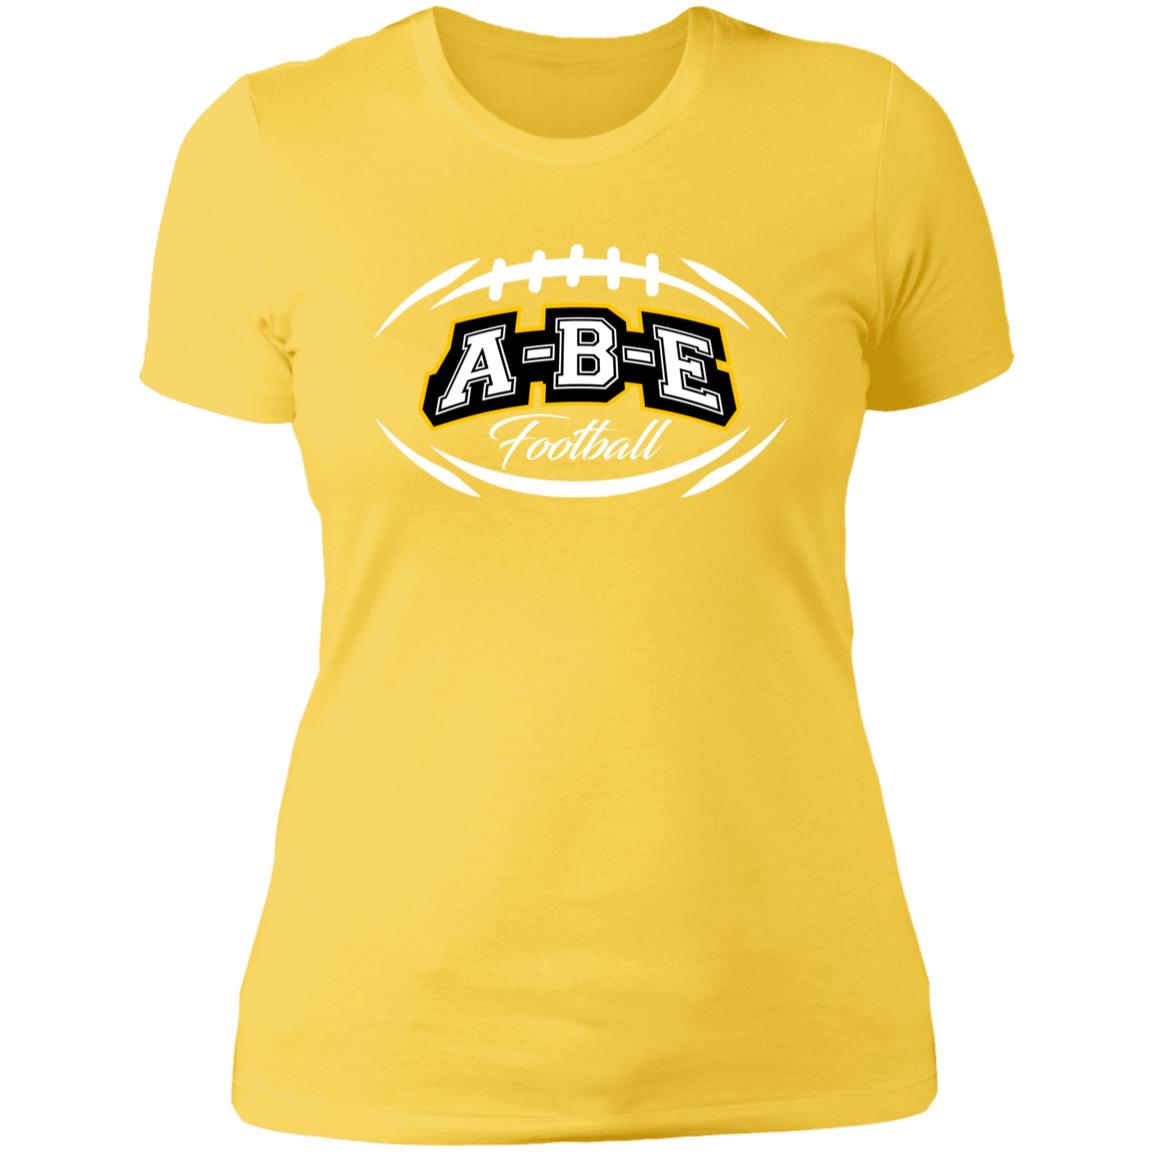 A-B-E Football - Ladies' Boyfriend T-Shirt